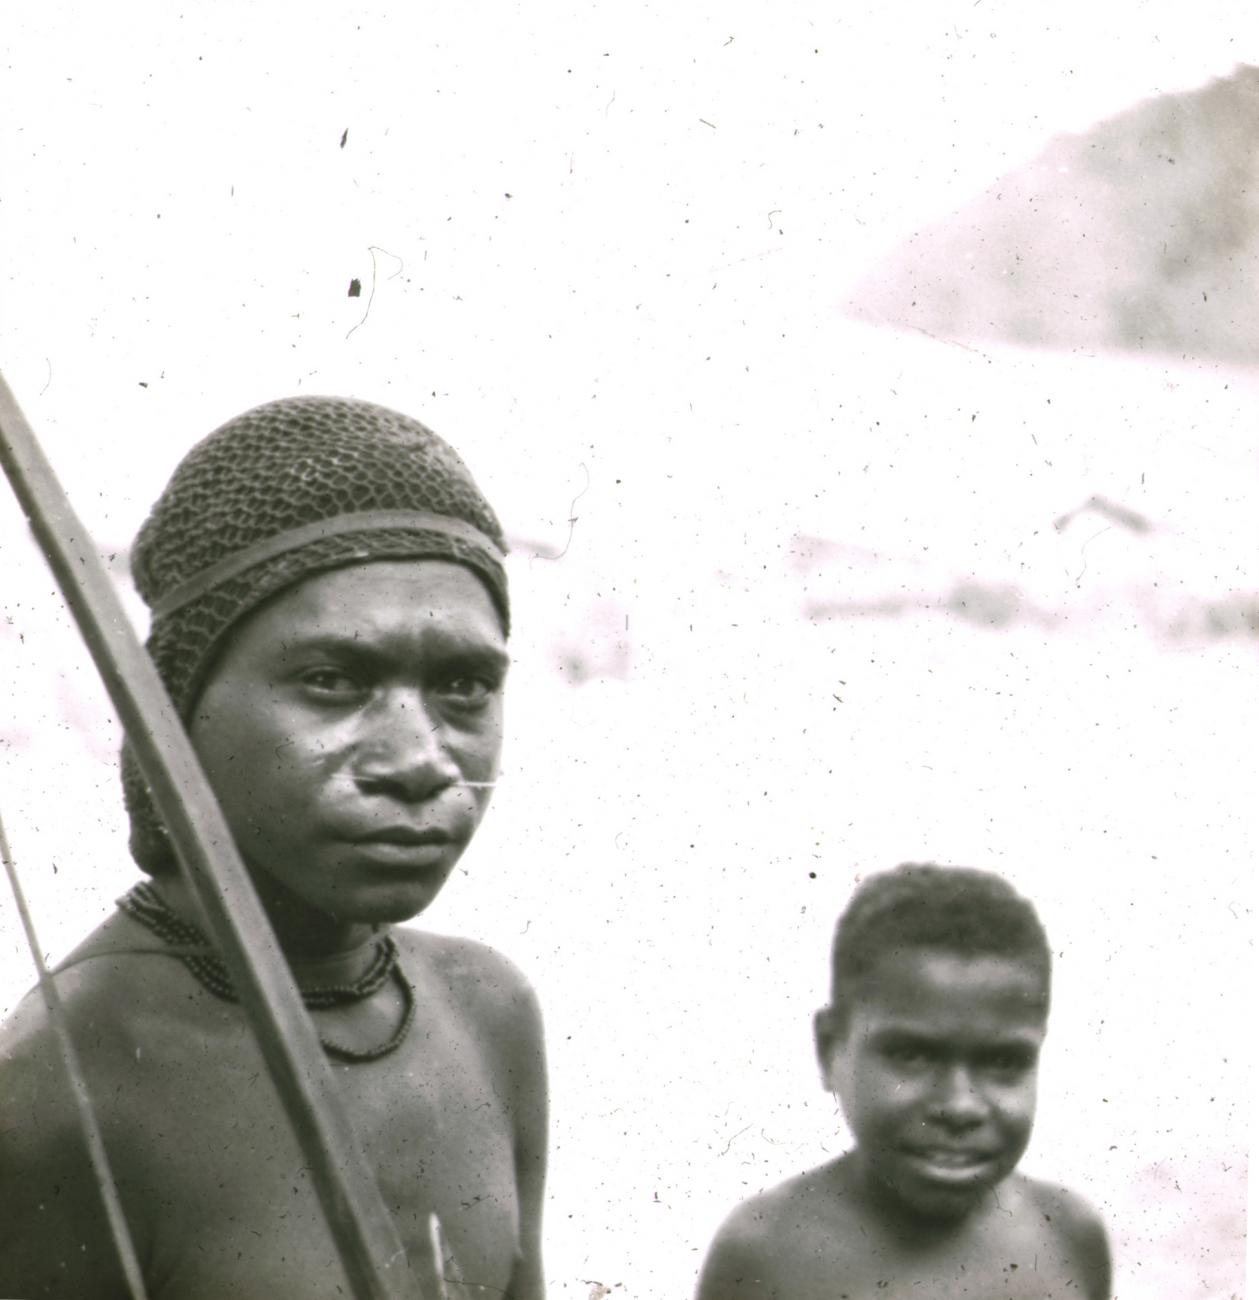 BD/329/35 - 
Portret van een Papoea-adolescent met boog
